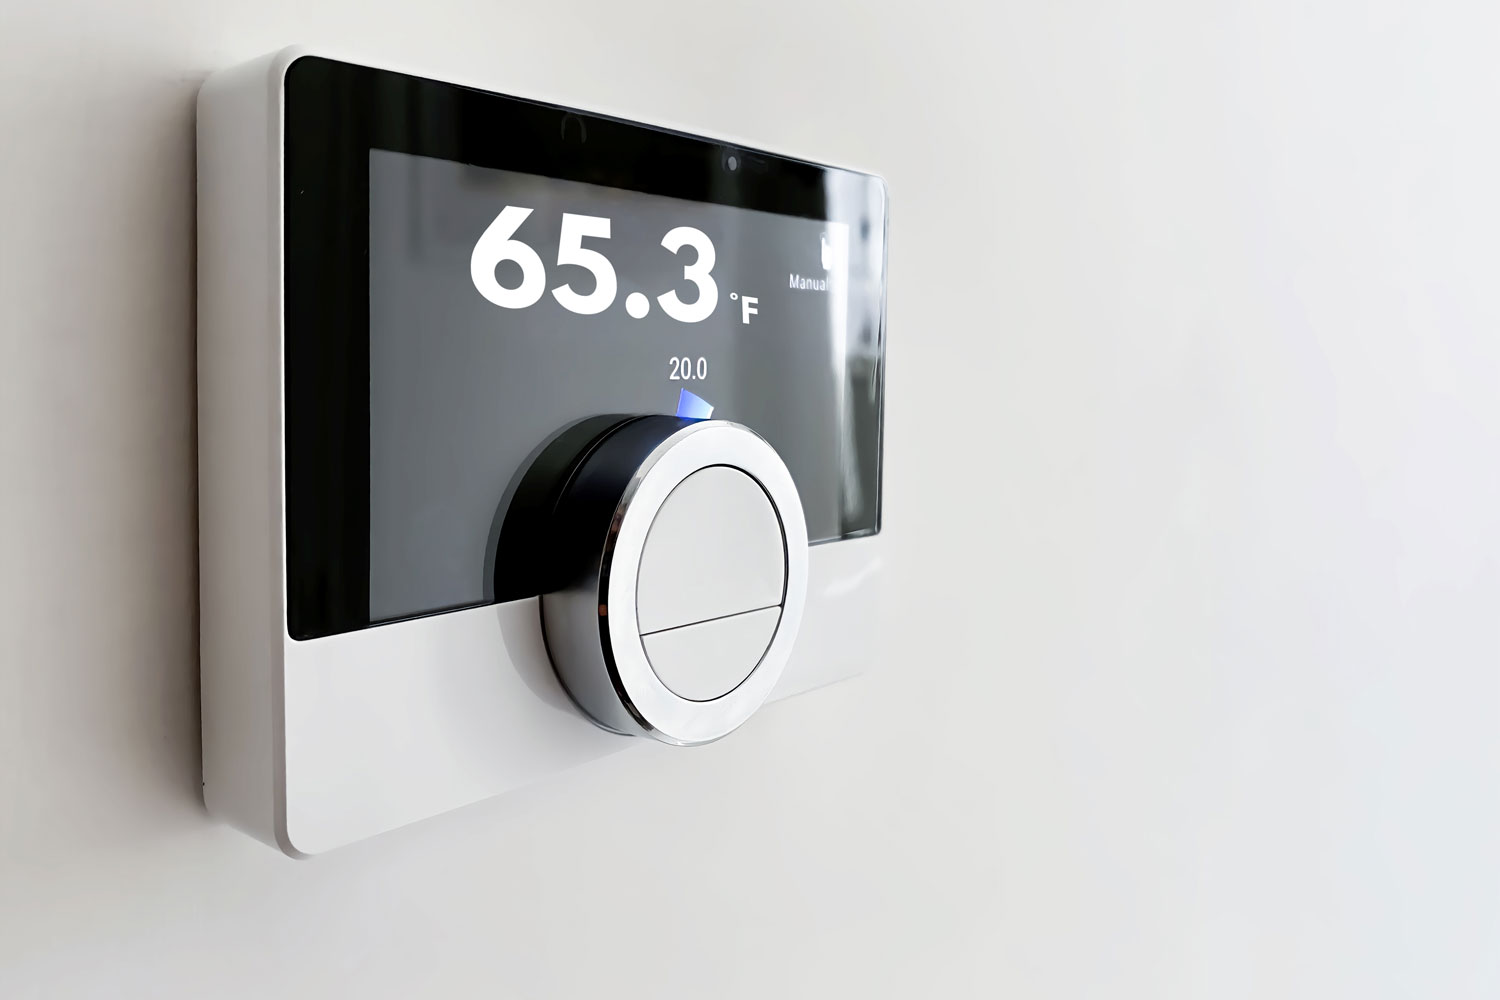 A thermostat set to 65.3 degrees FahrenheiT